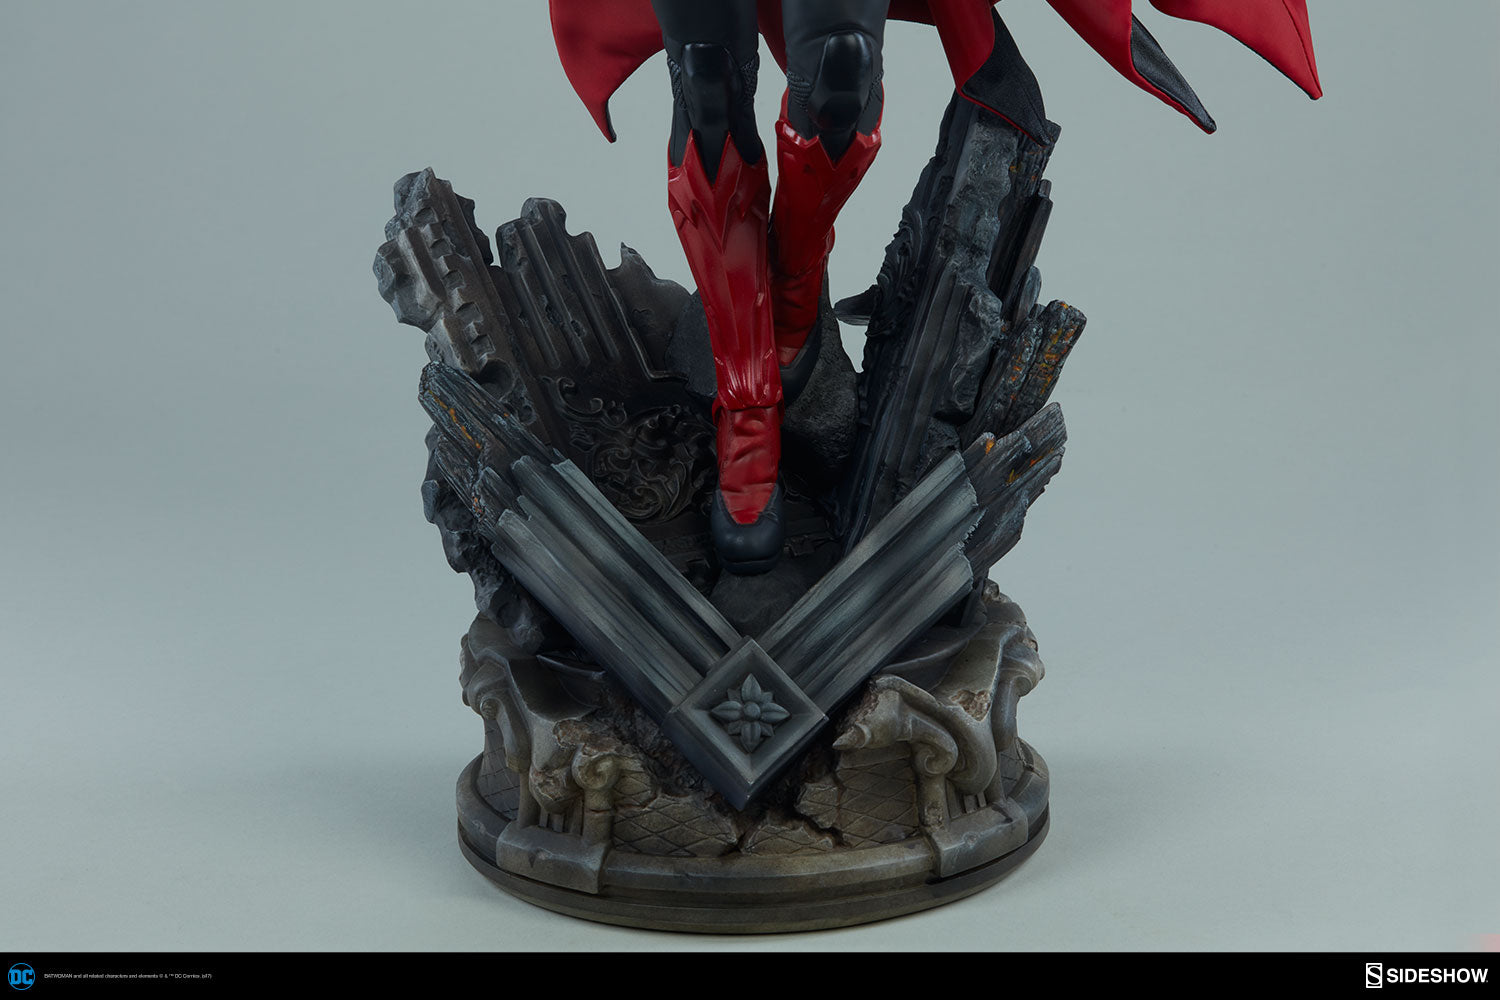 Sideshow Collectibles - Batwoman Premium Format Figure - Marvelous Toys